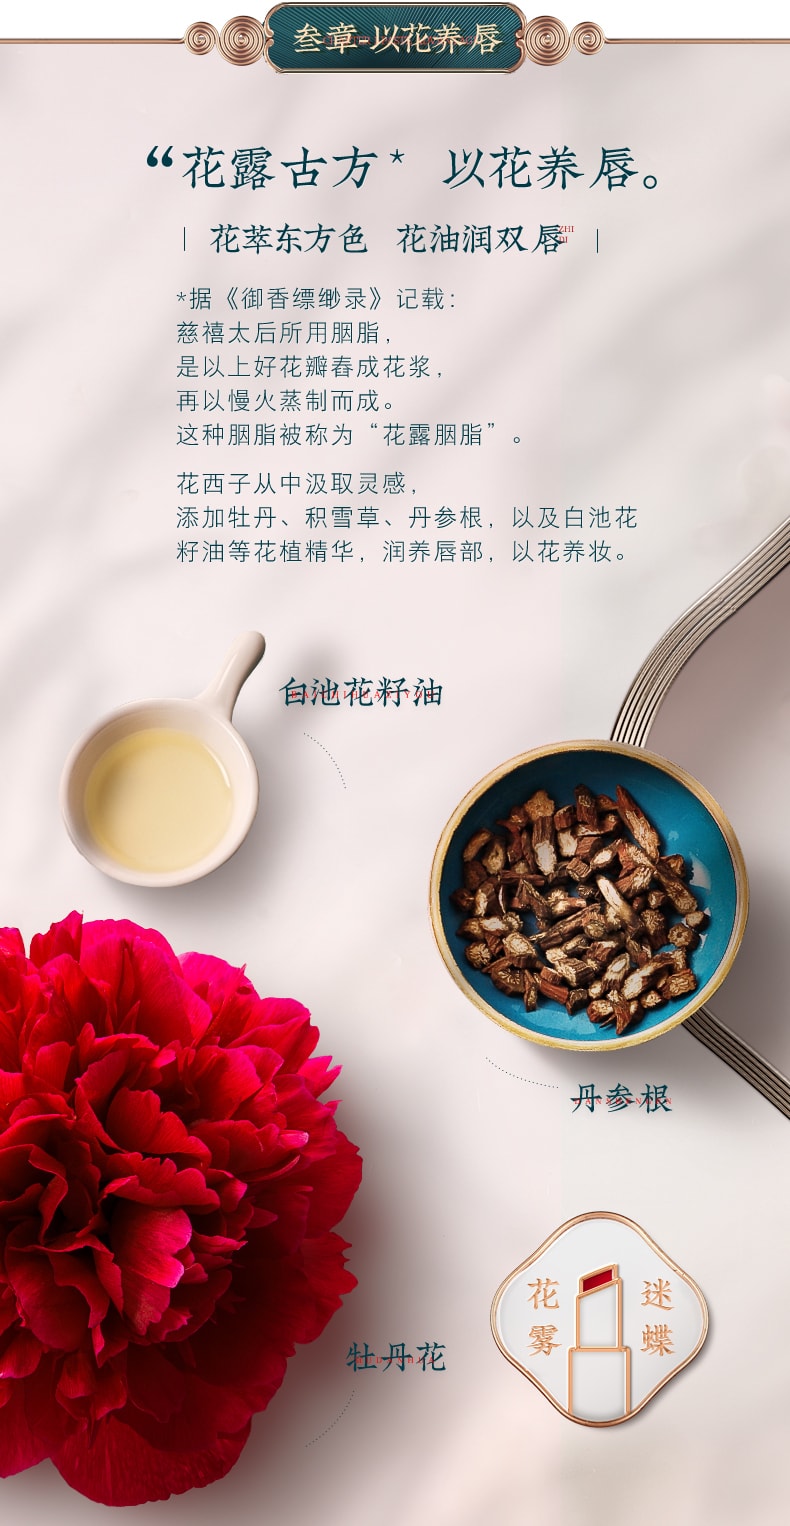 [China Direct Mail] Huaxizi Flower Lipstick Matte Matte Moisturizing Lipstick M201 Meihuanu (Matte Tomato Red) 1pcs